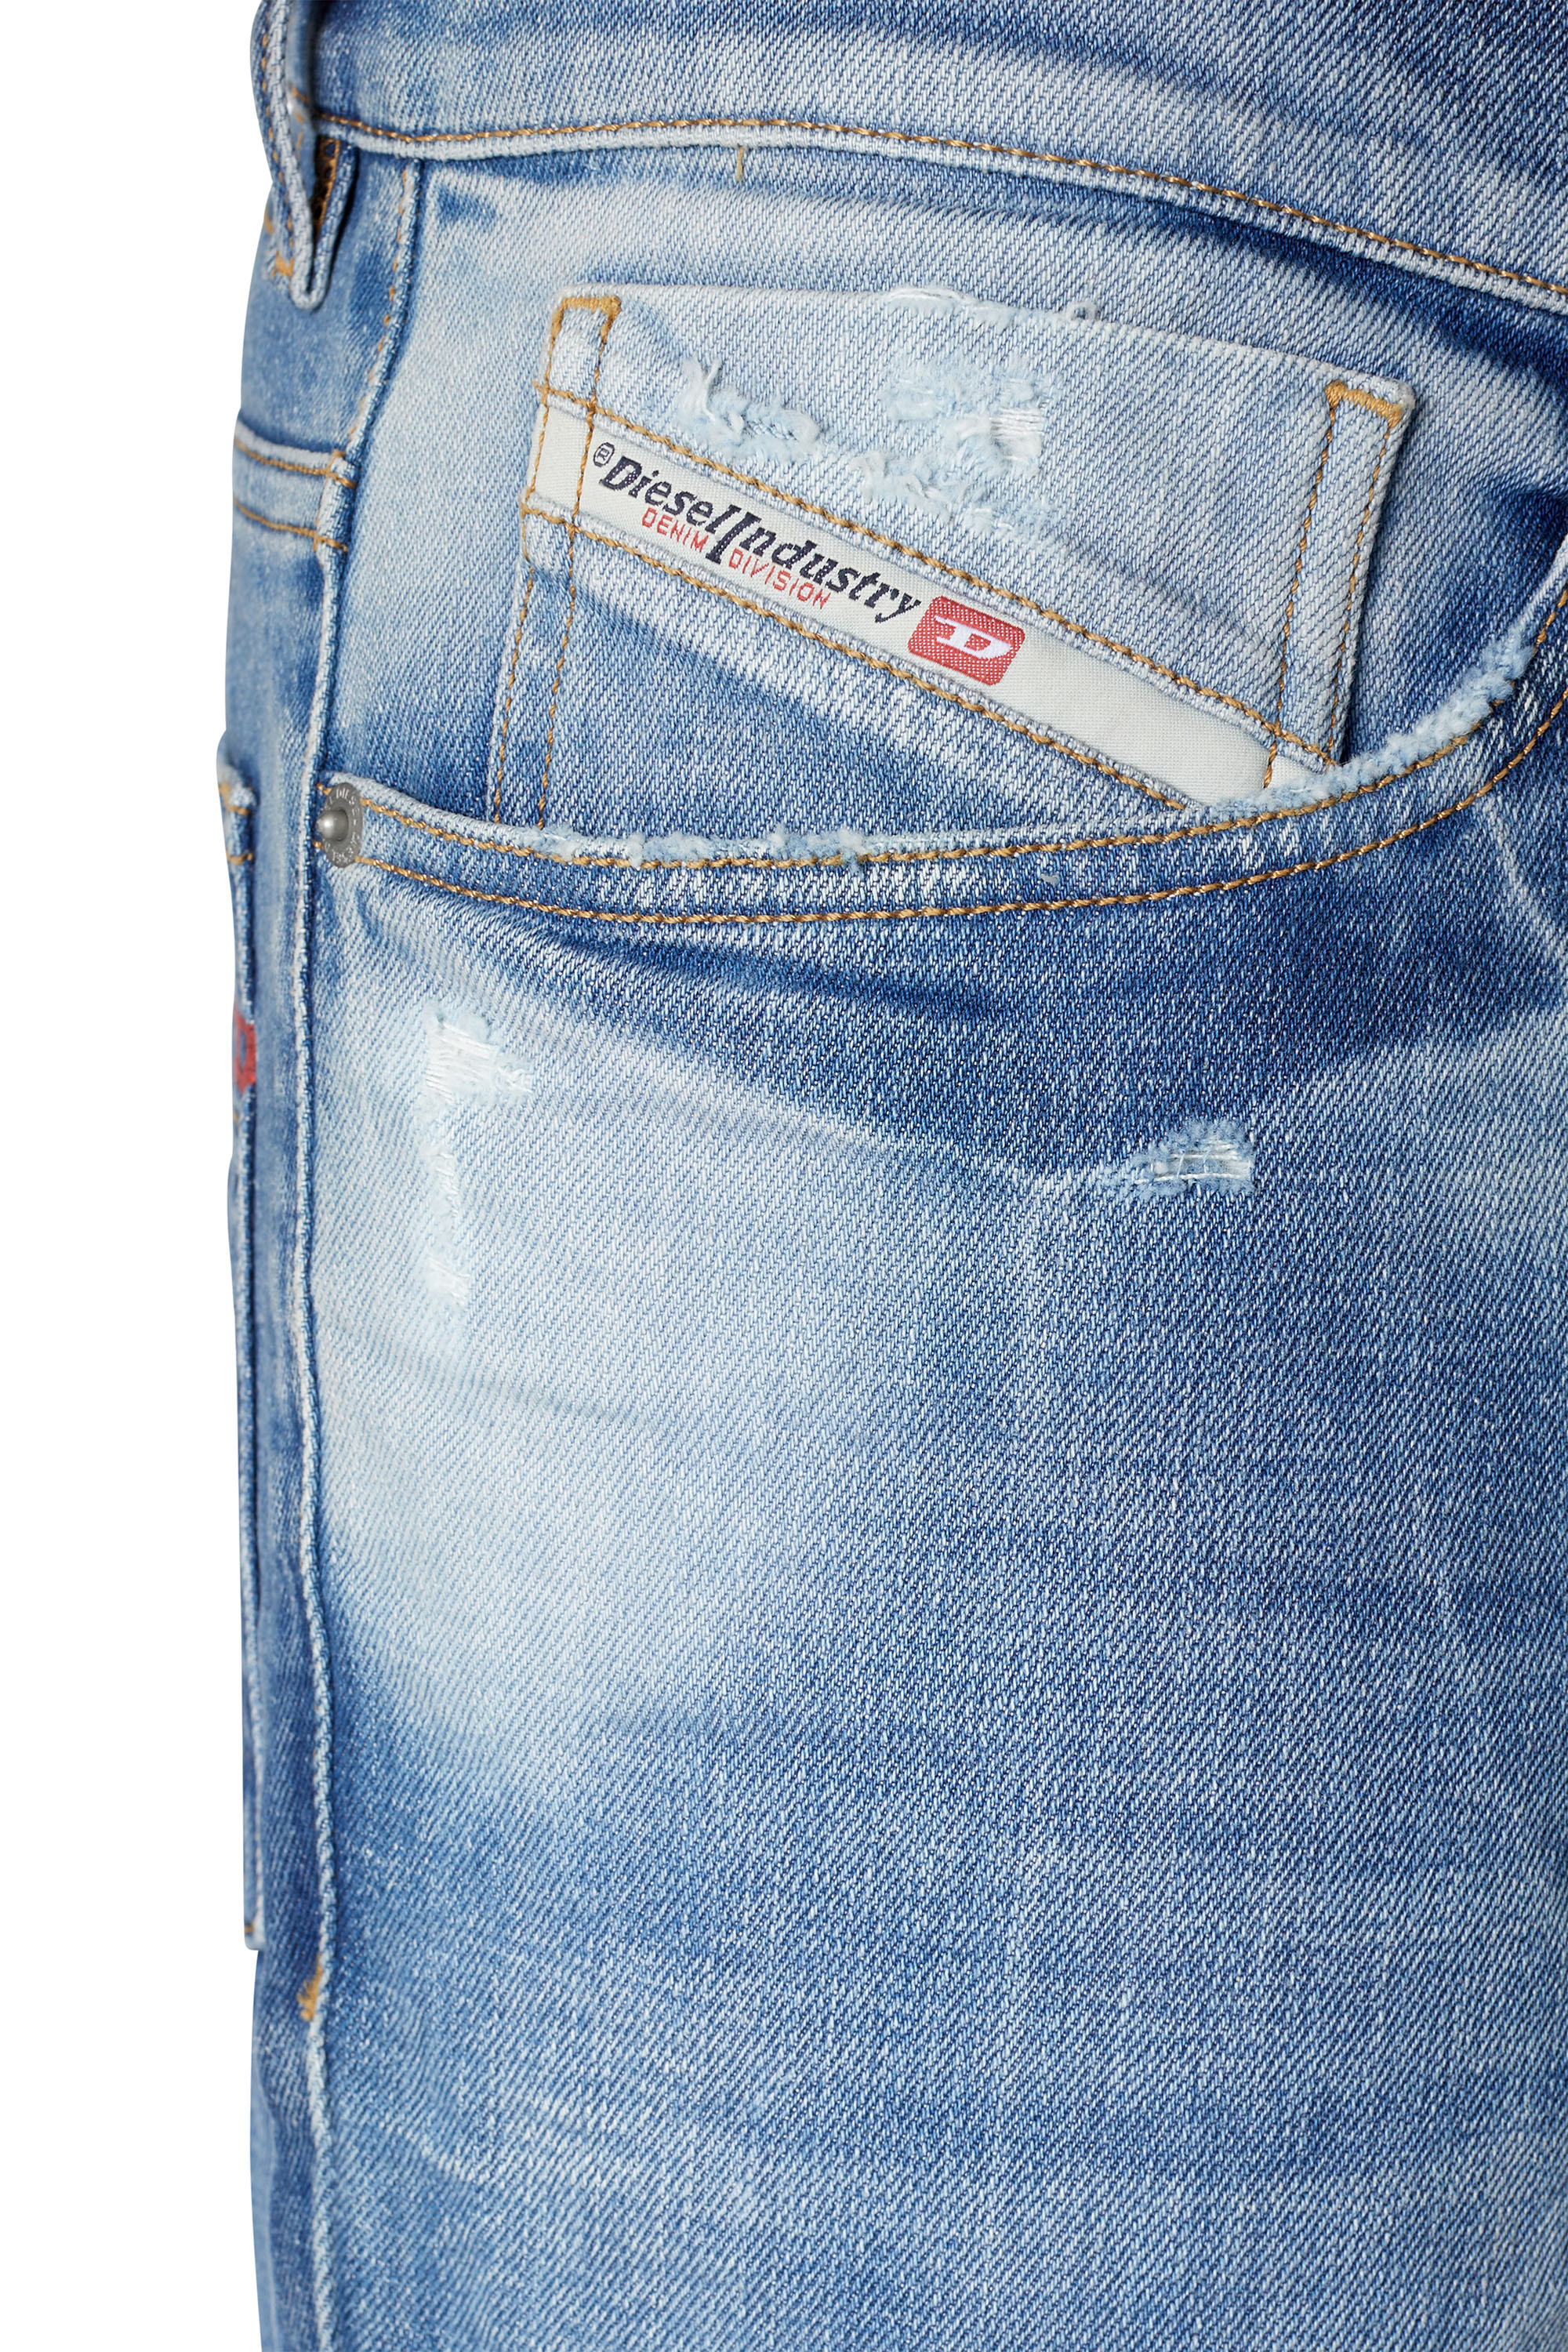 Men's Jeans: Skinny, Slim, Bootcut & Tapered Jeans | Diesel